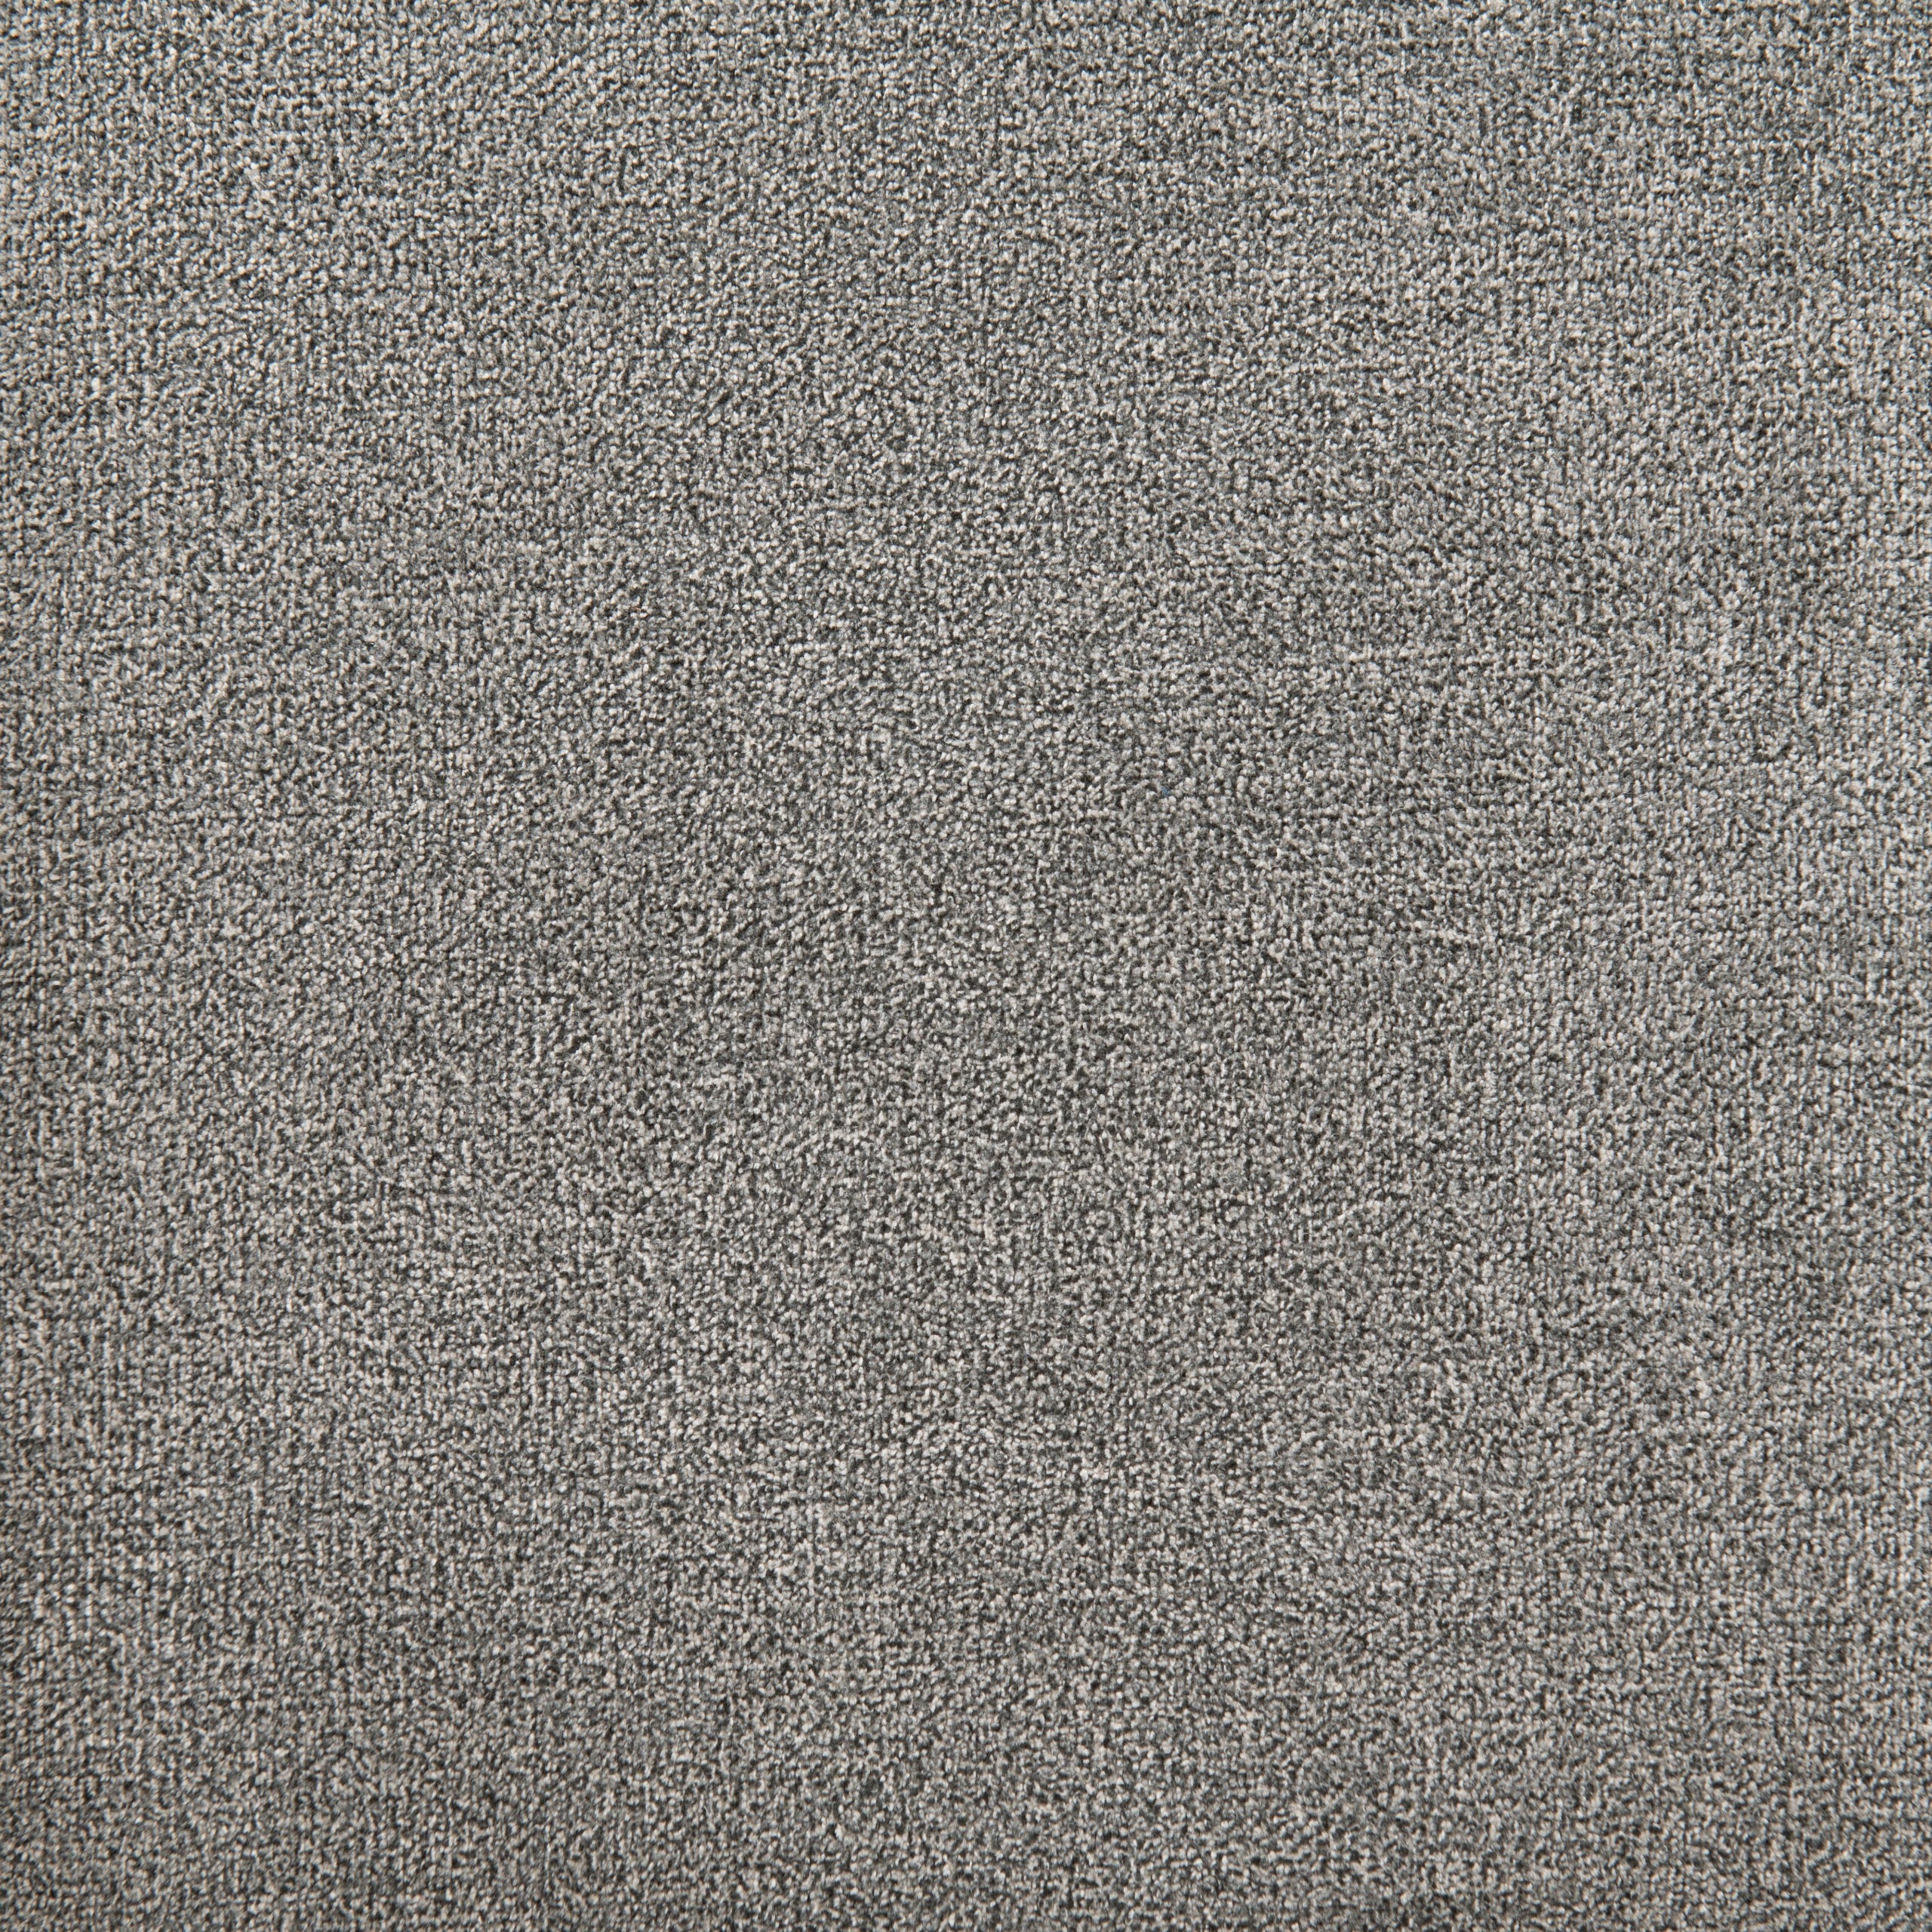 Amelia Storage Ottoman Dark Grey Fabric